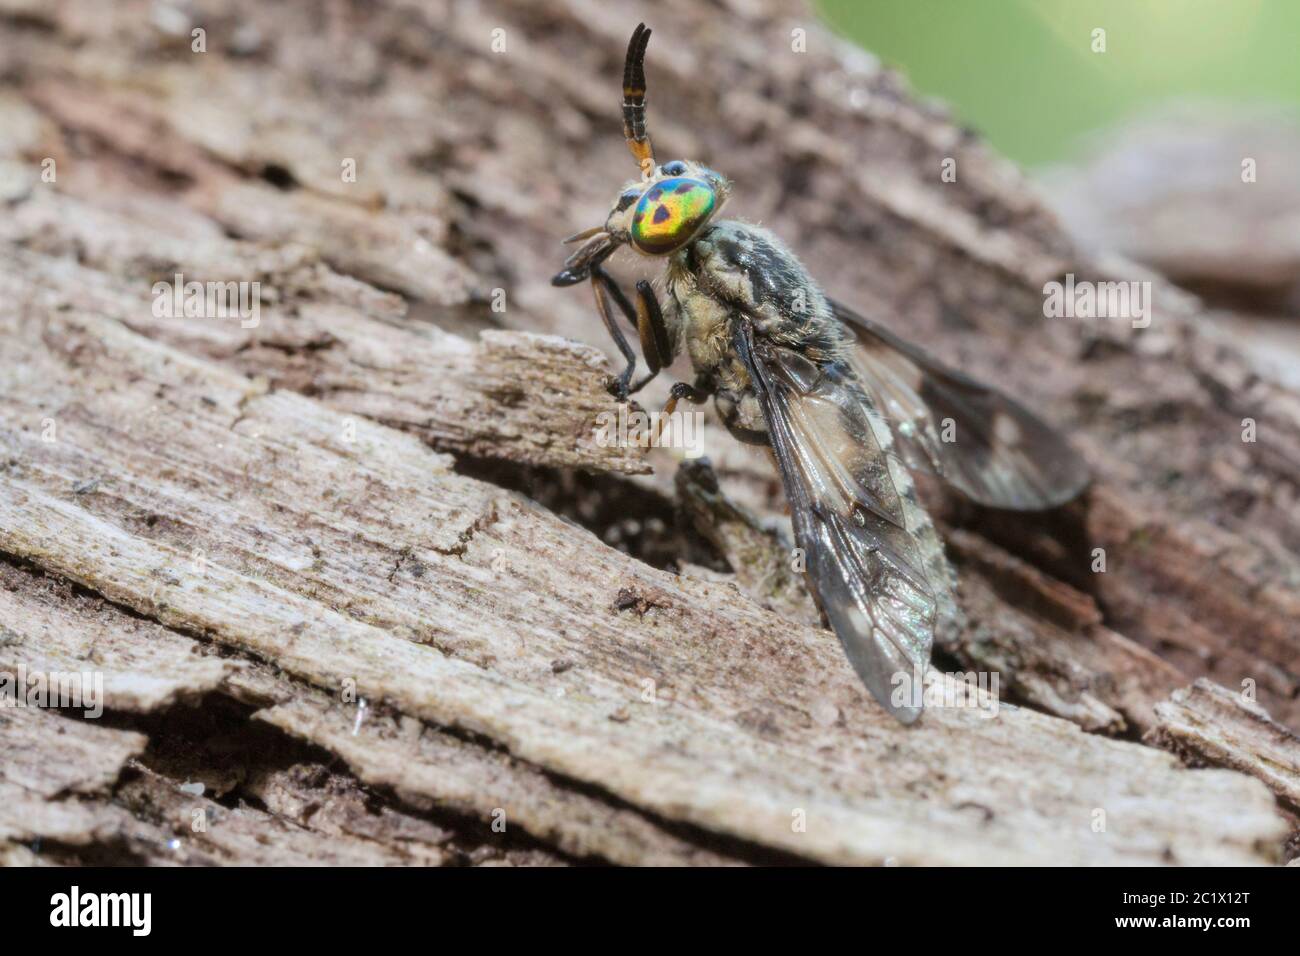 Deerfly, venado-fly, breezefly, breeze-fly, caballo-fly (Chrysops relictus), descansa sobre un pedazo de madera, Alemania, Baviera, Niederbayern, Baja Baviera Foto de stock